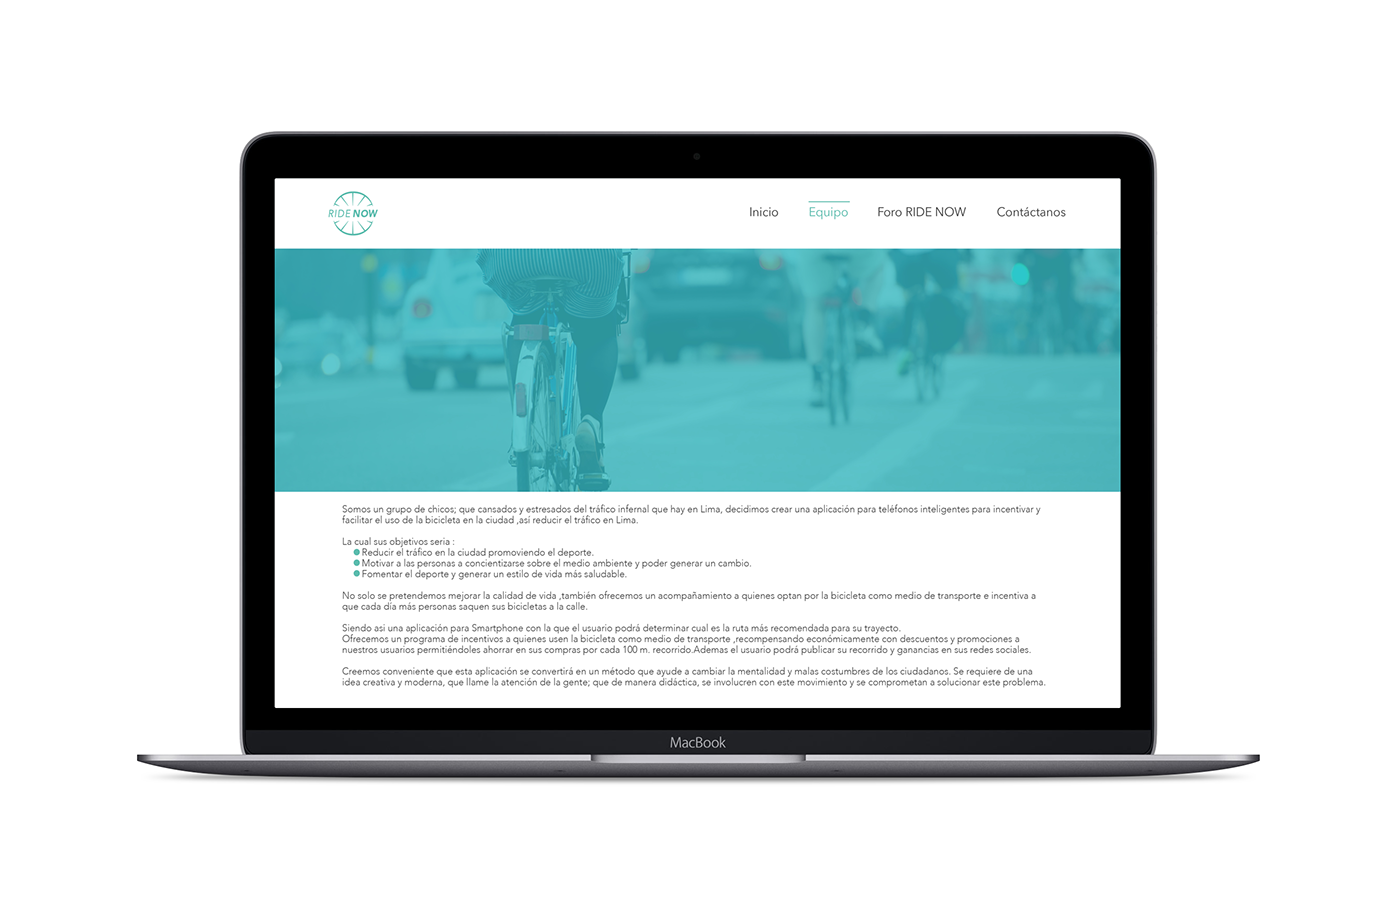 app ridenow descuentos TRAFICO servicio ecológico pagina web smartphone Bicycle traffic lima